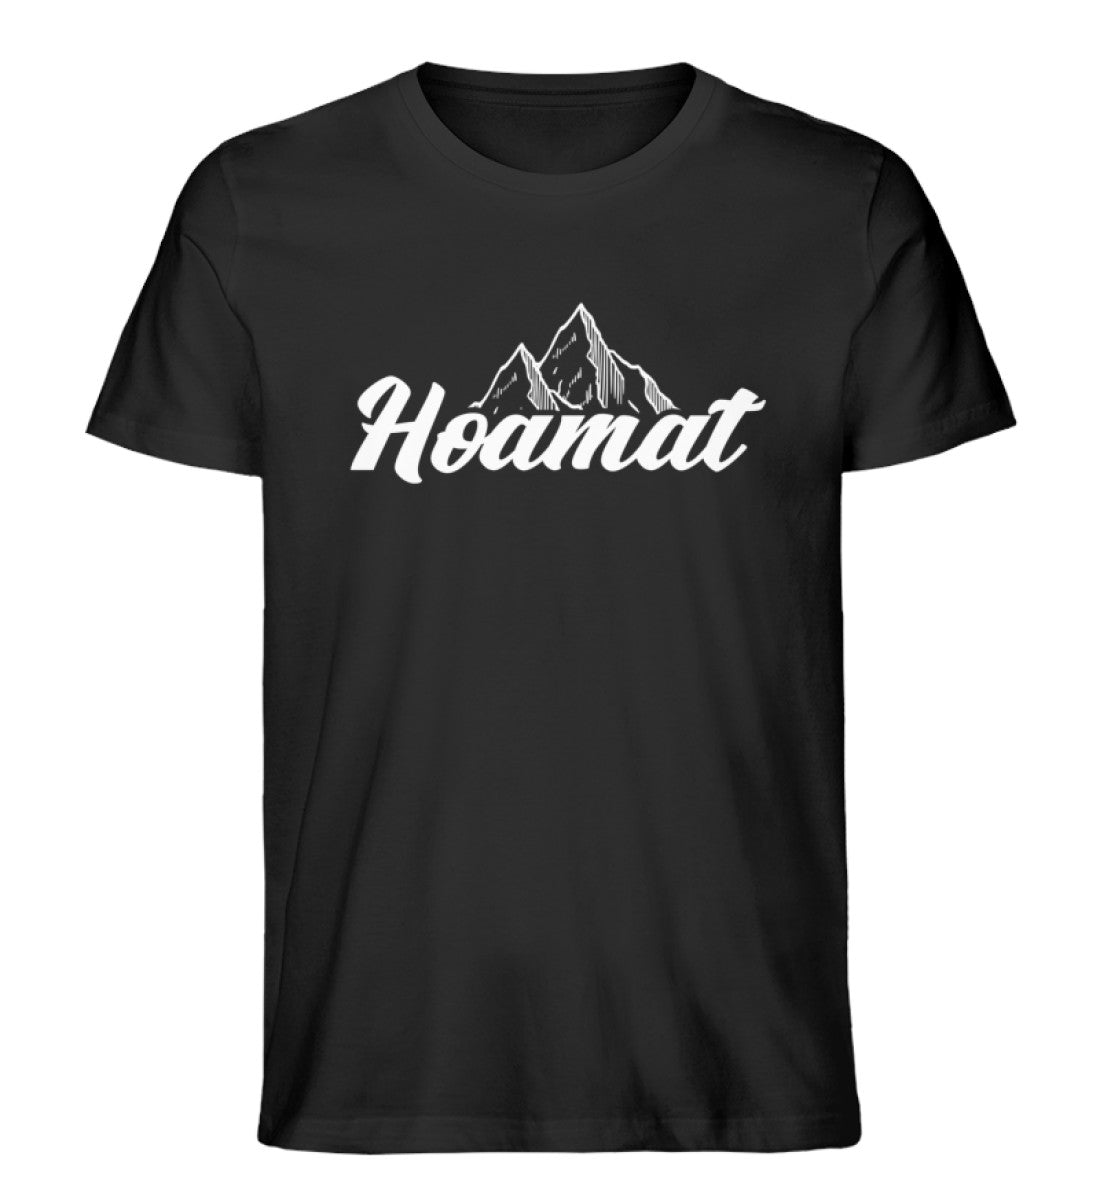 Hoamat - Herren Organic T-Shirt berge Schwarz